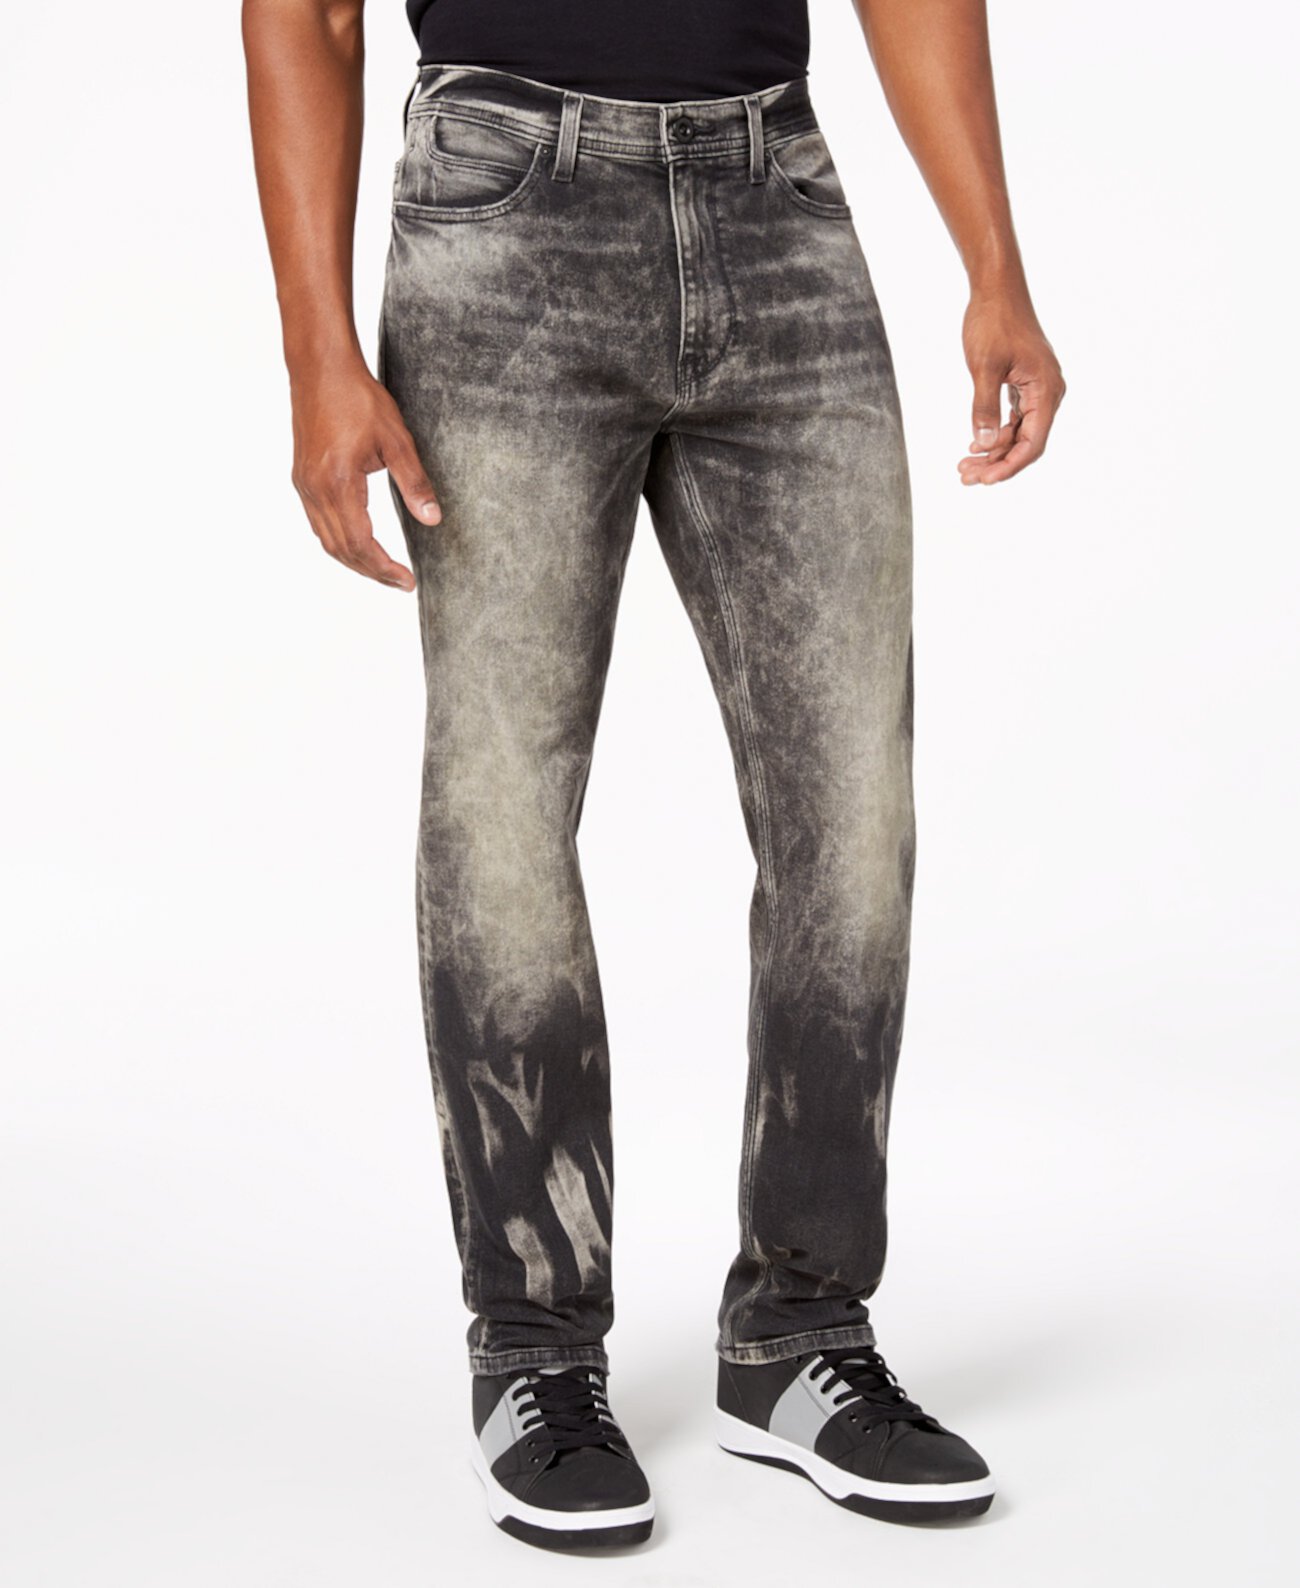 Мужские большие и высокие расслабленные зауженные джинсы, созданные для Macy's Sean John